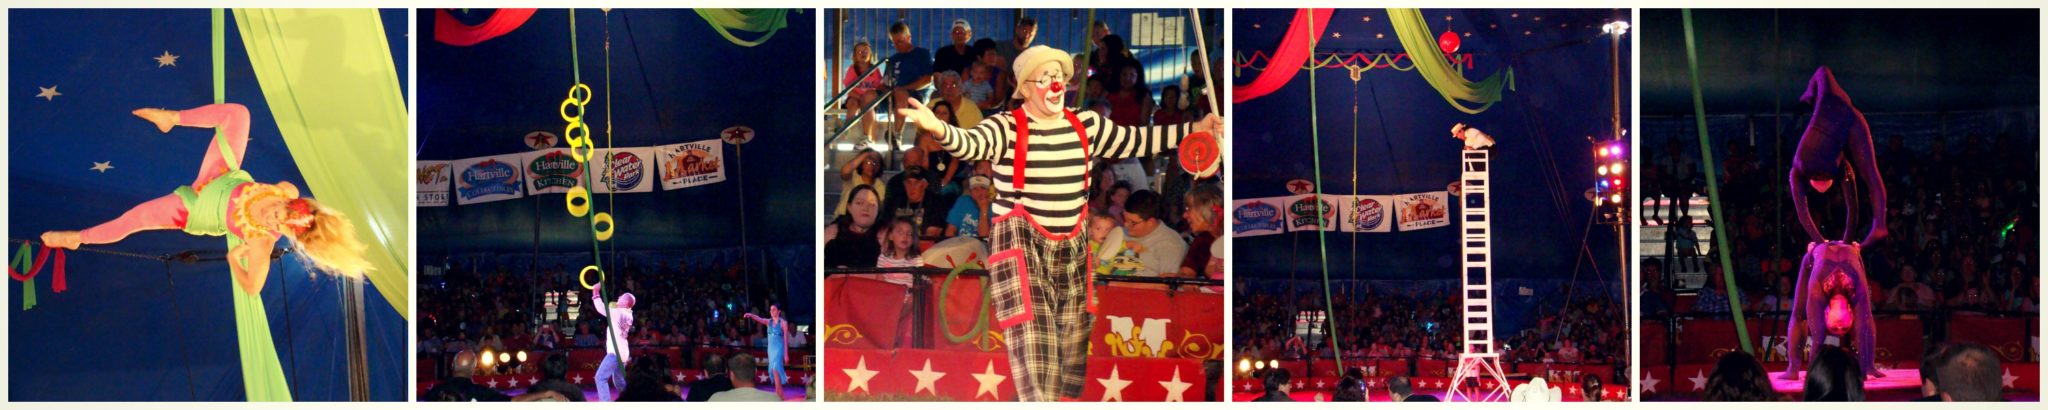 circus photo strip